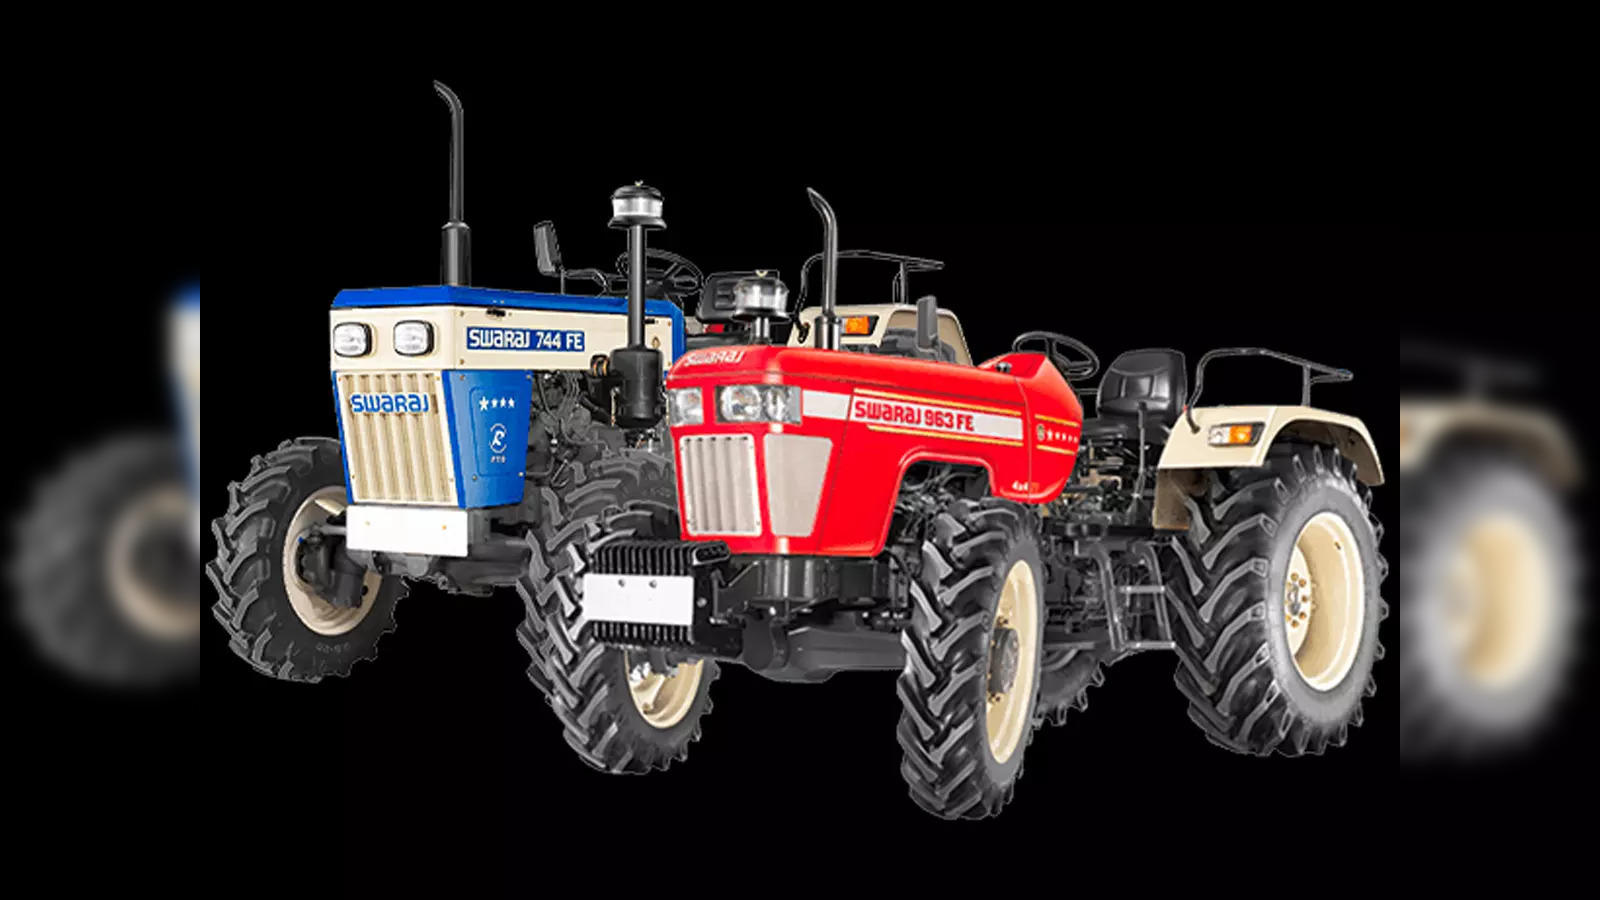 Nextgen Trac Spares International: Swaraj Tractor Parts